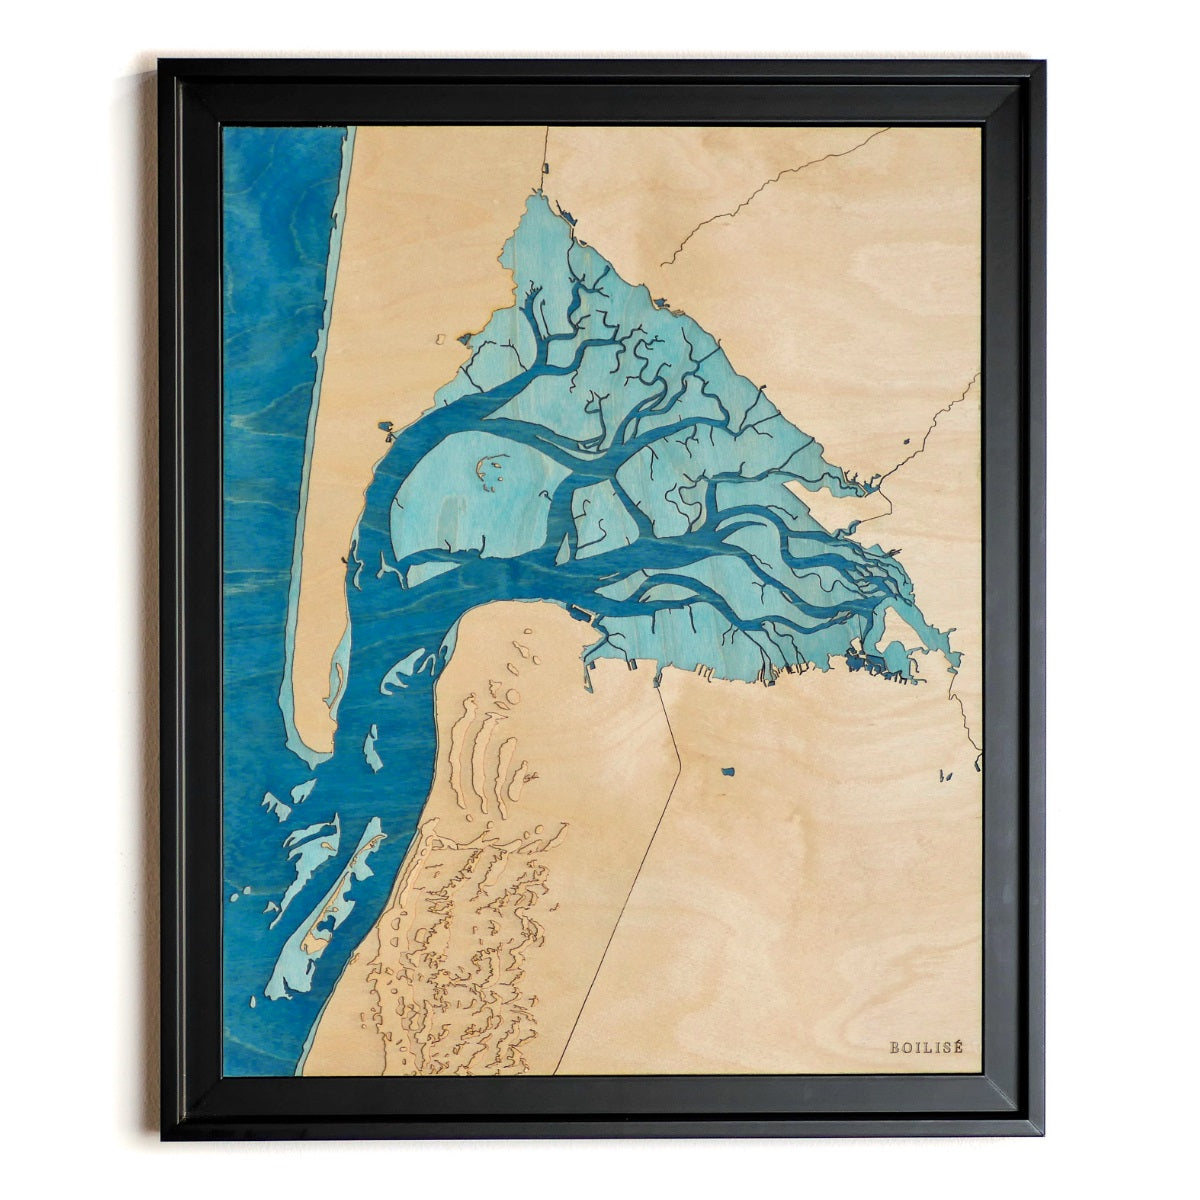 Tableau du bassin d'Arcachon, caisse américaine noire et océan bleu marine